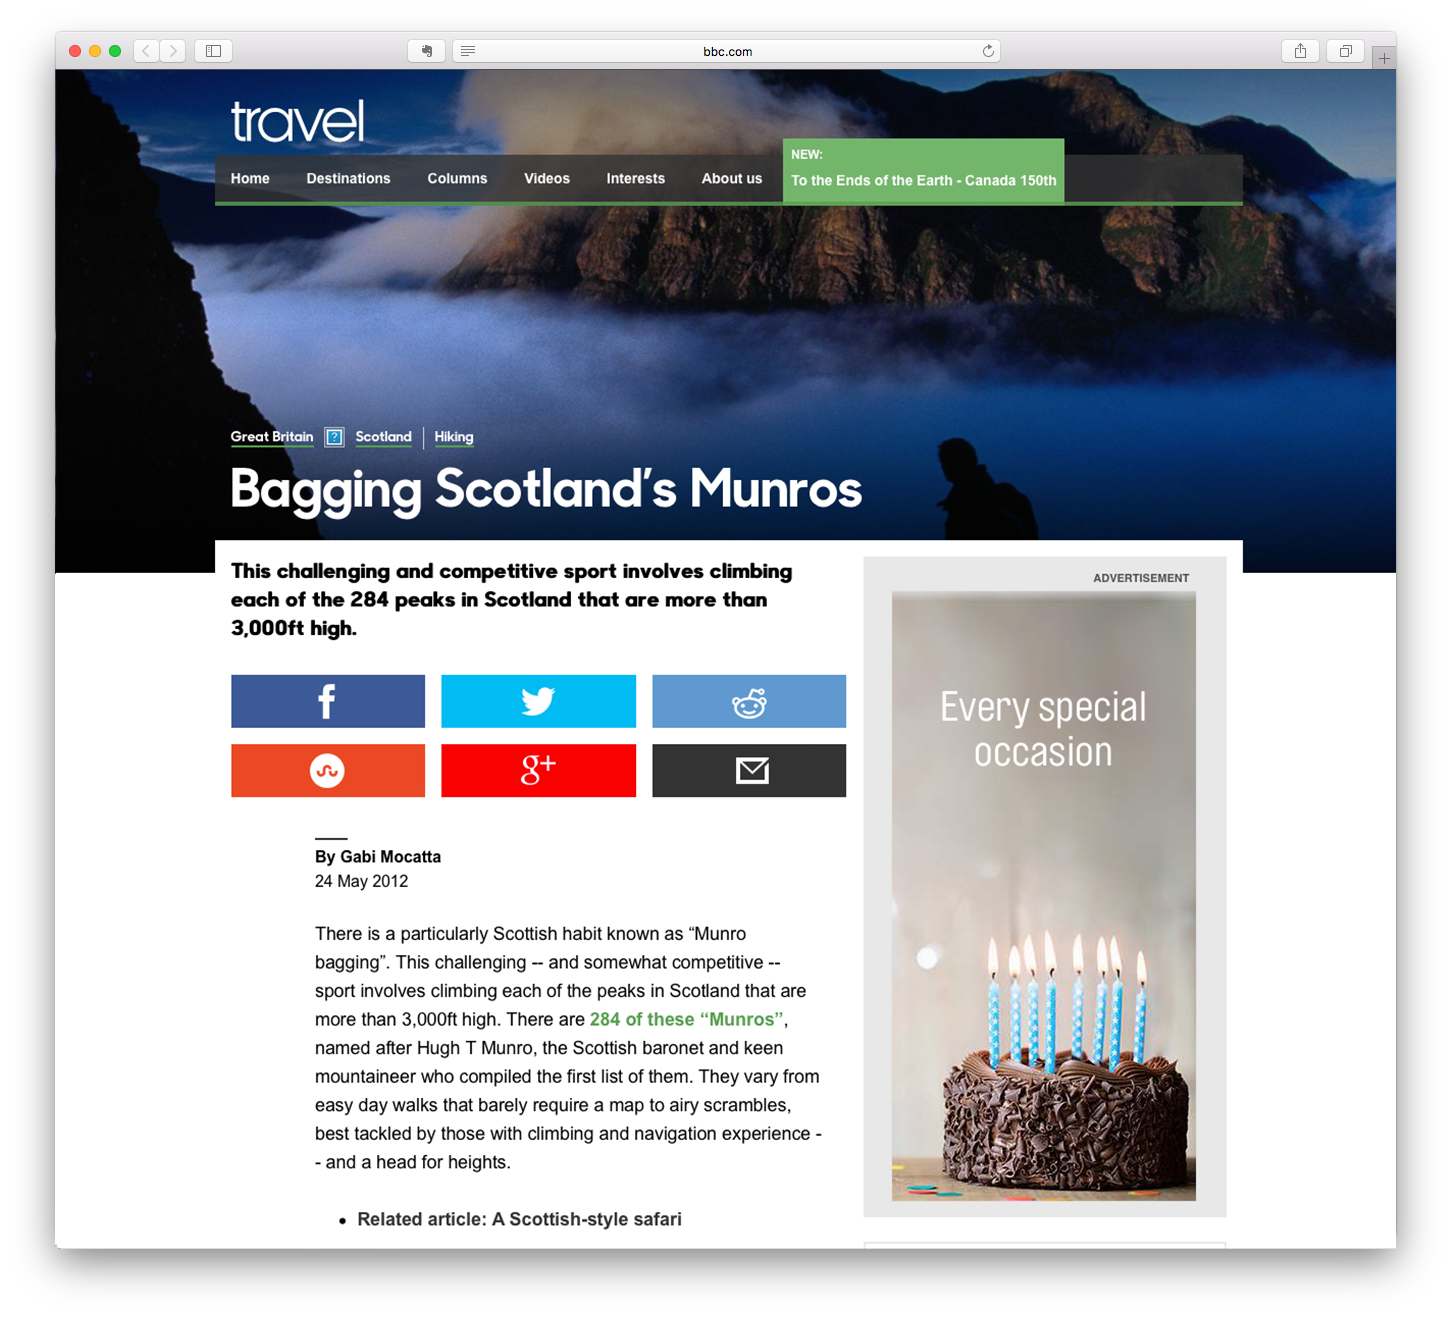 Bagging Scotland's Munros